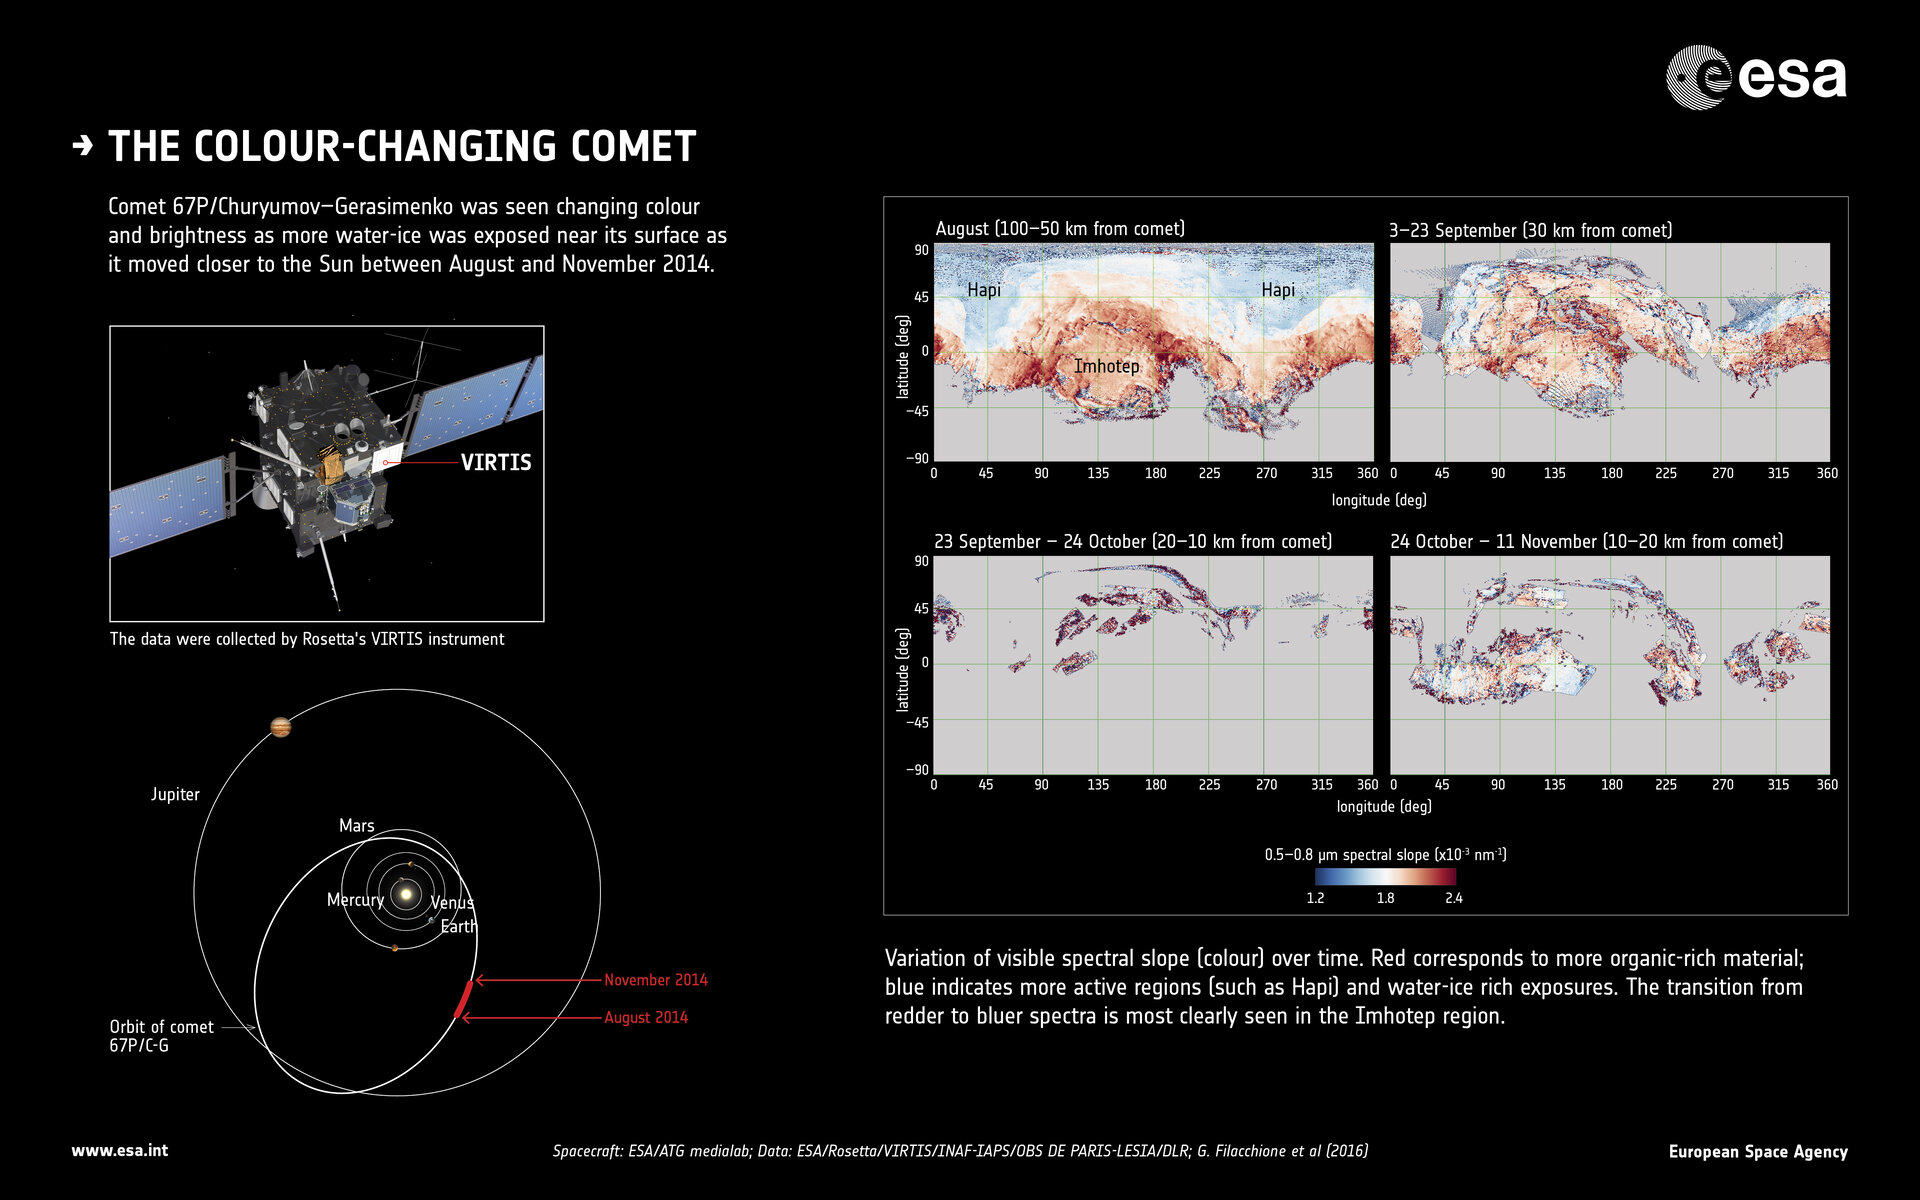 Der Komet, der seine Farbe ändert